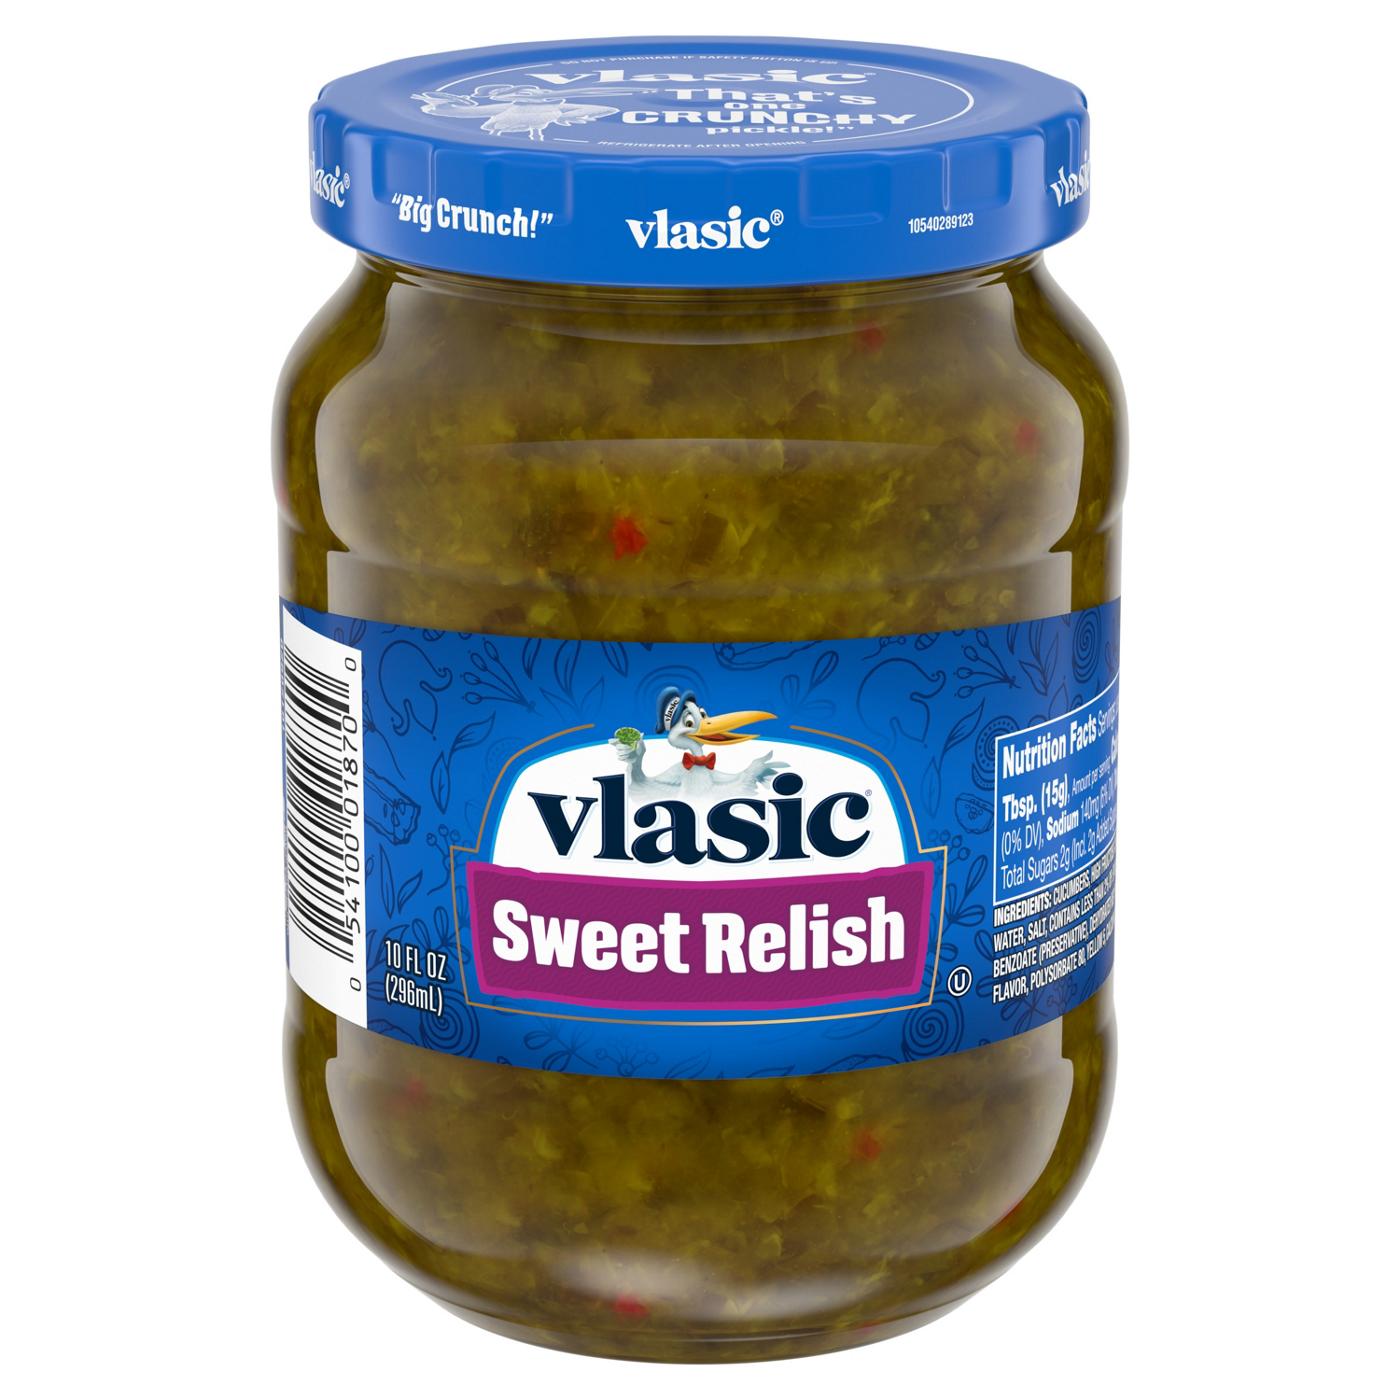 Vlasic Sweet Relish; image 1 of 2